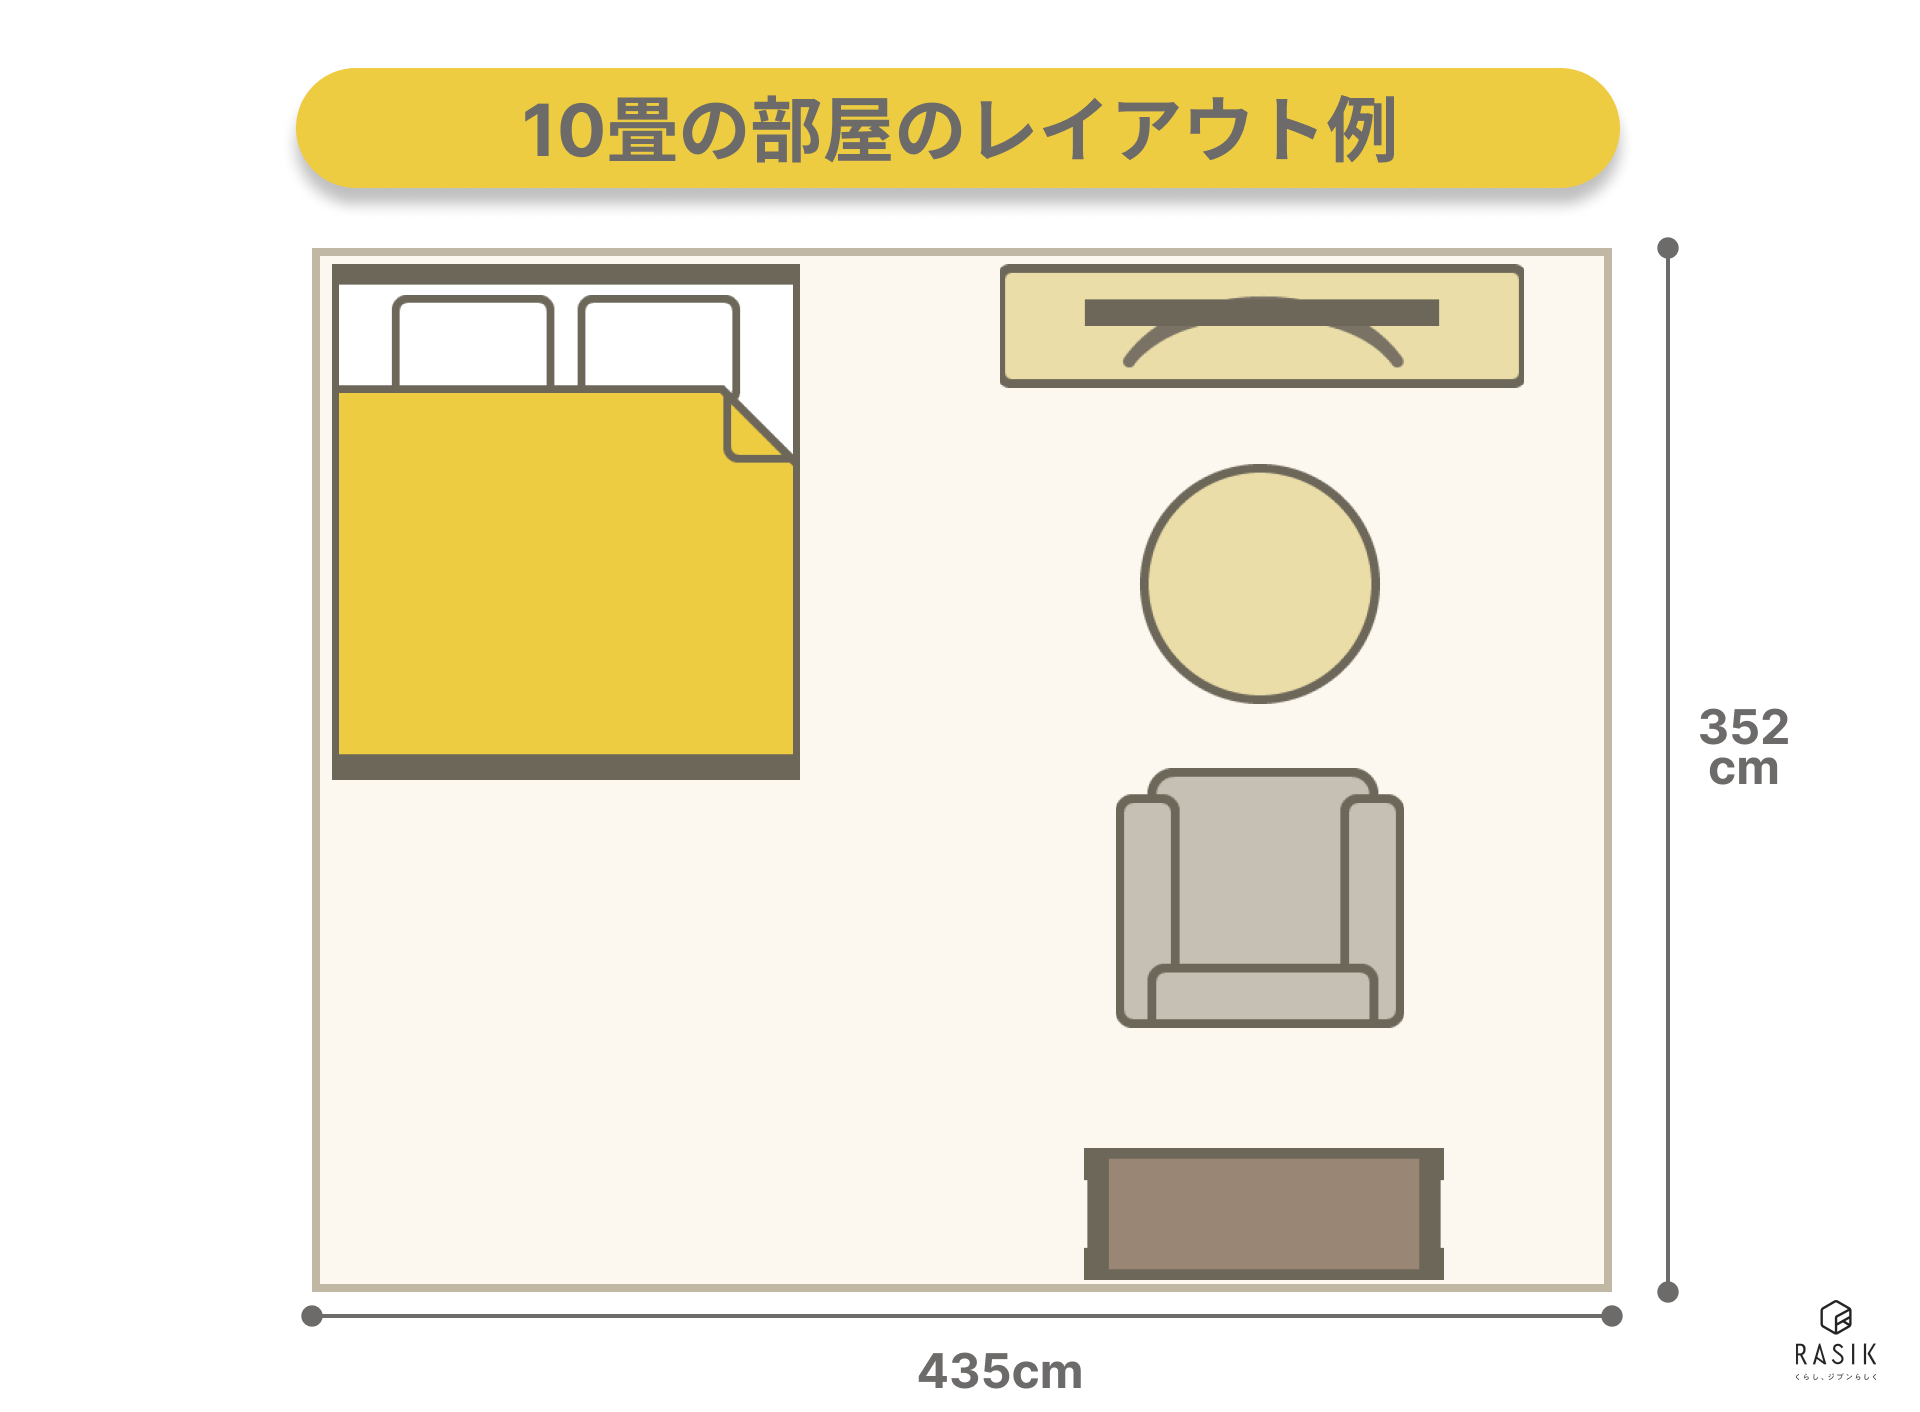 10畳のおしゃれな寝室レイアウト例